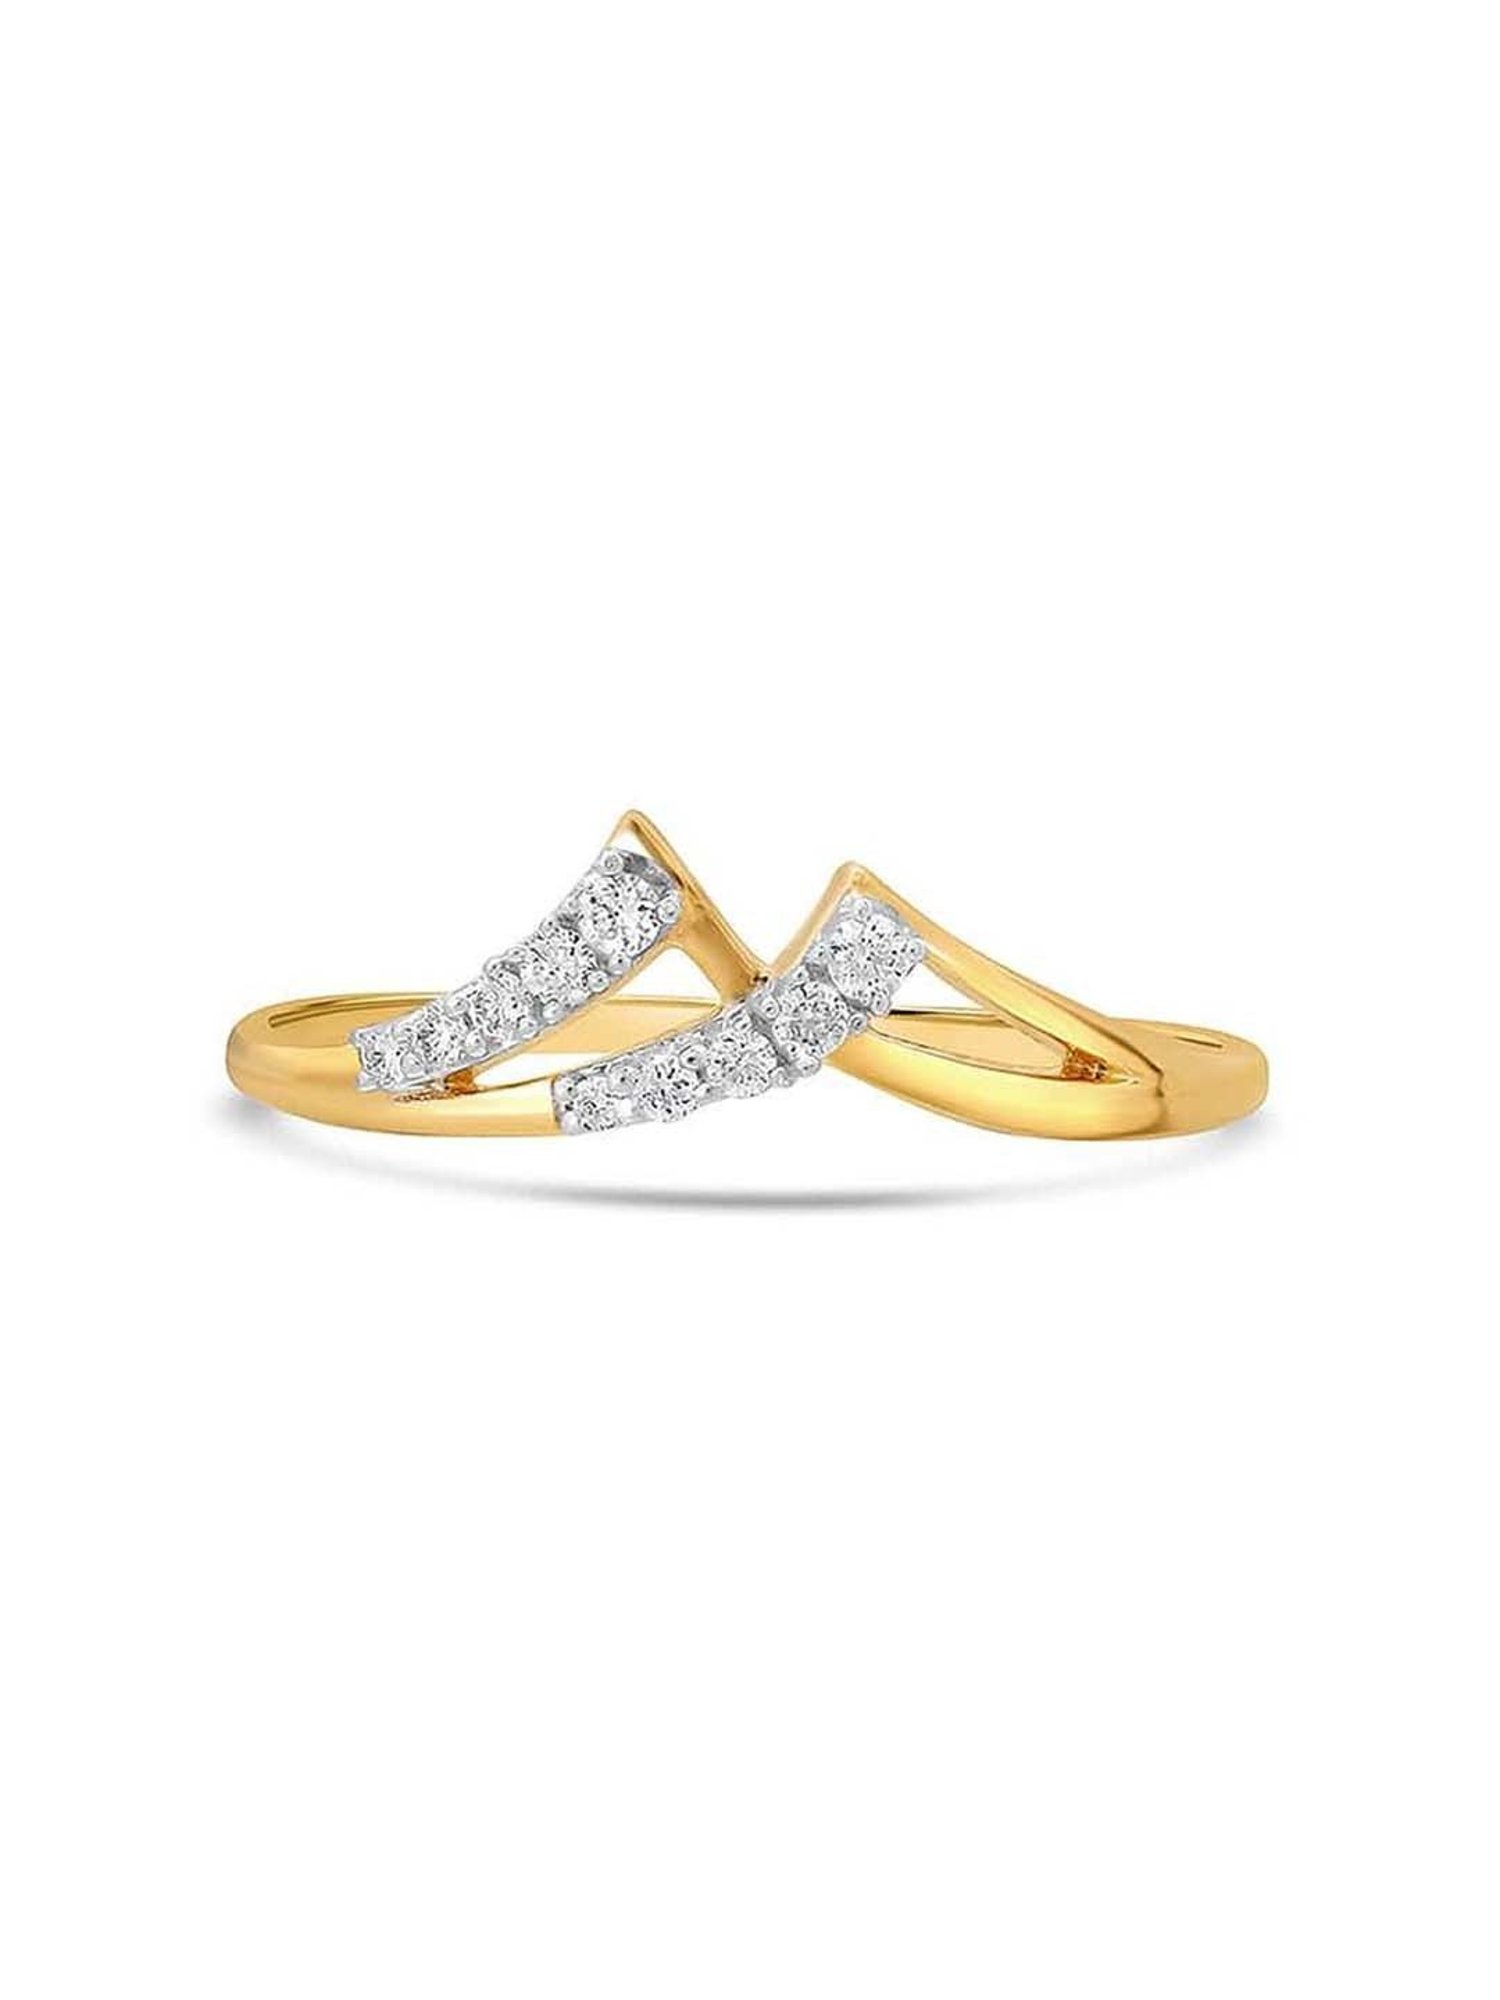 Effy Duo 14K Yellow and White Gold Diamond Ring, 0.55 TCW – effyjewelry.com